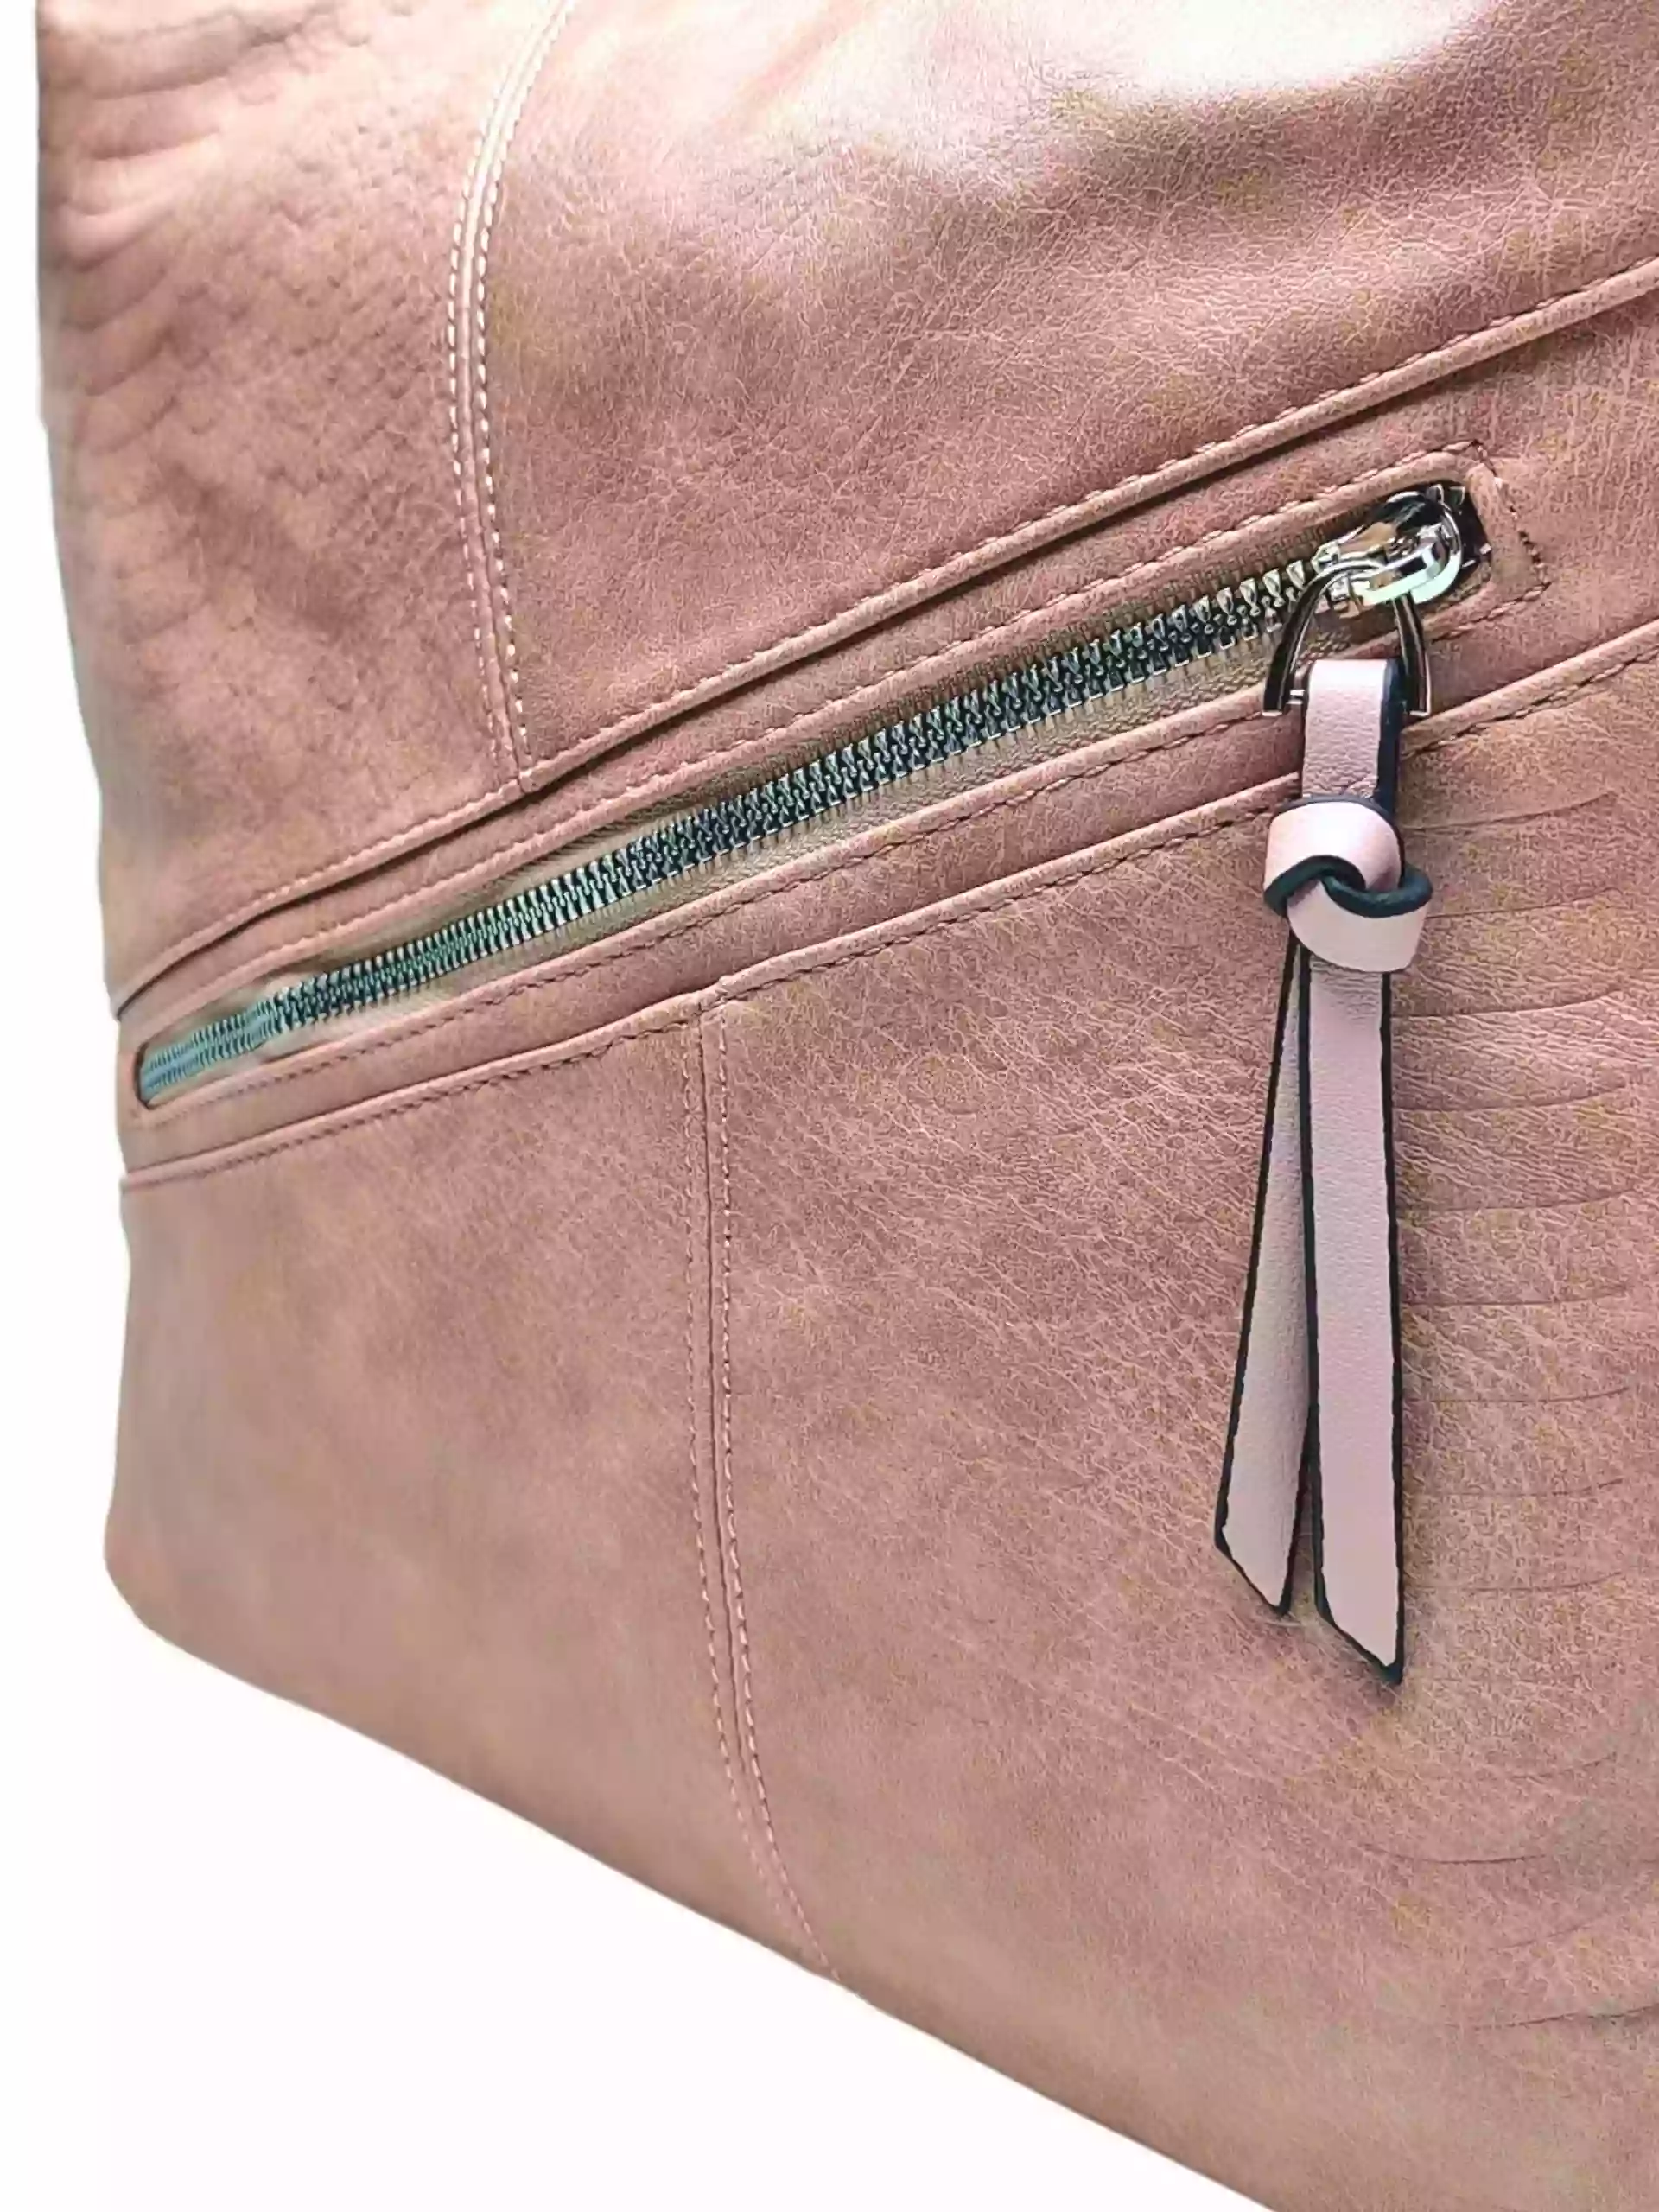 Velký starorůžový kabelko-batoh z eko kůže, Tapple, H18077, detail kabelko-batohu 2v1